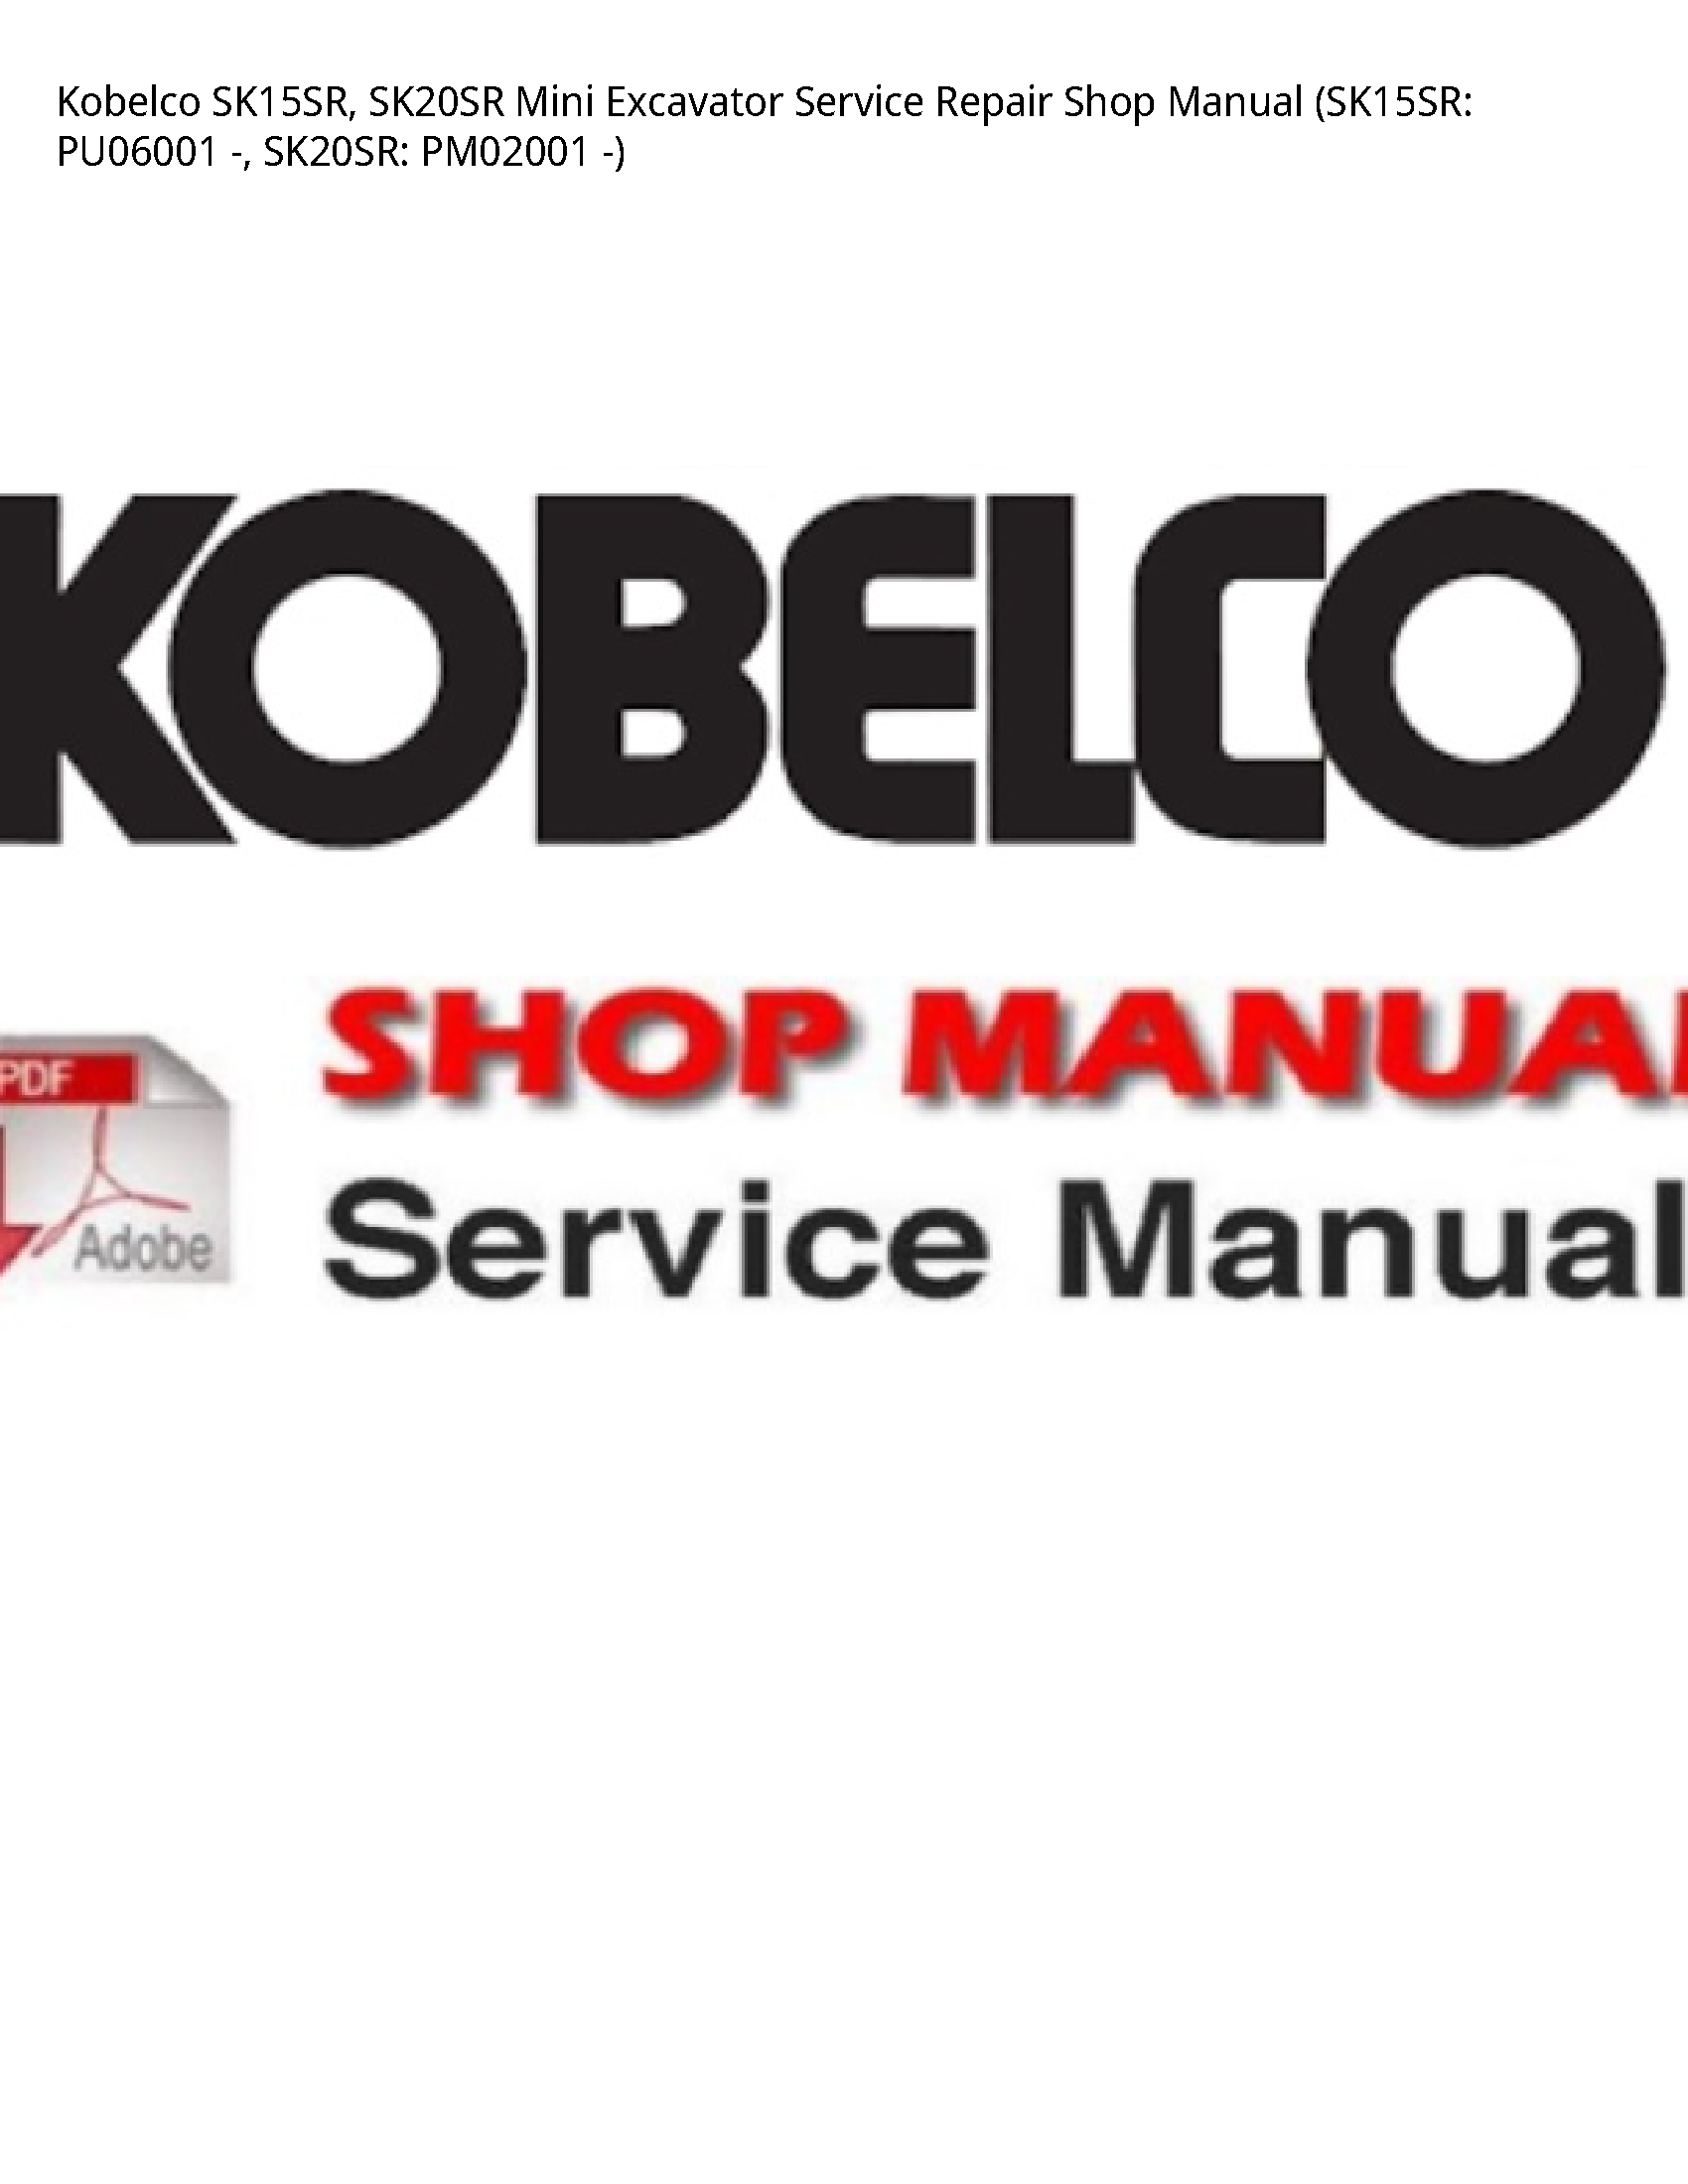 Kobelco SK15SR Mini Excavator manual